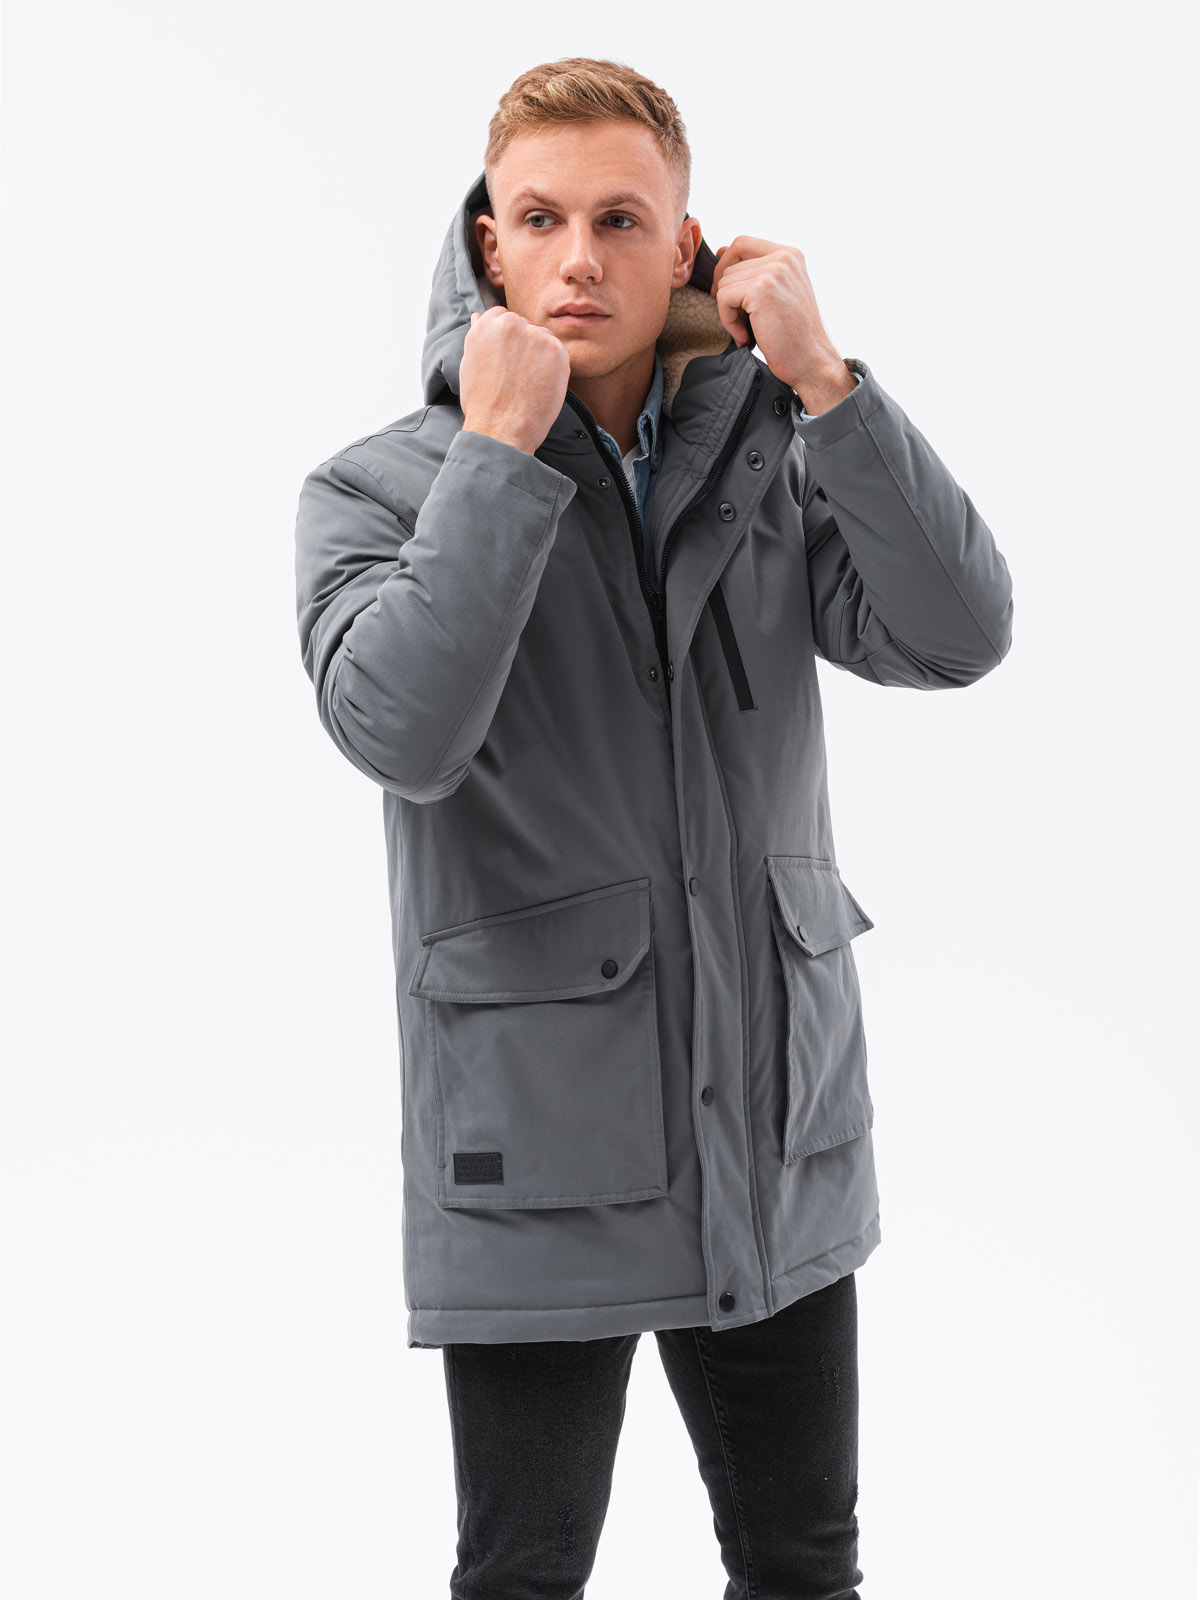 Men's winter jacket - dark grey C517 | Ombre.com - Men's clothing online